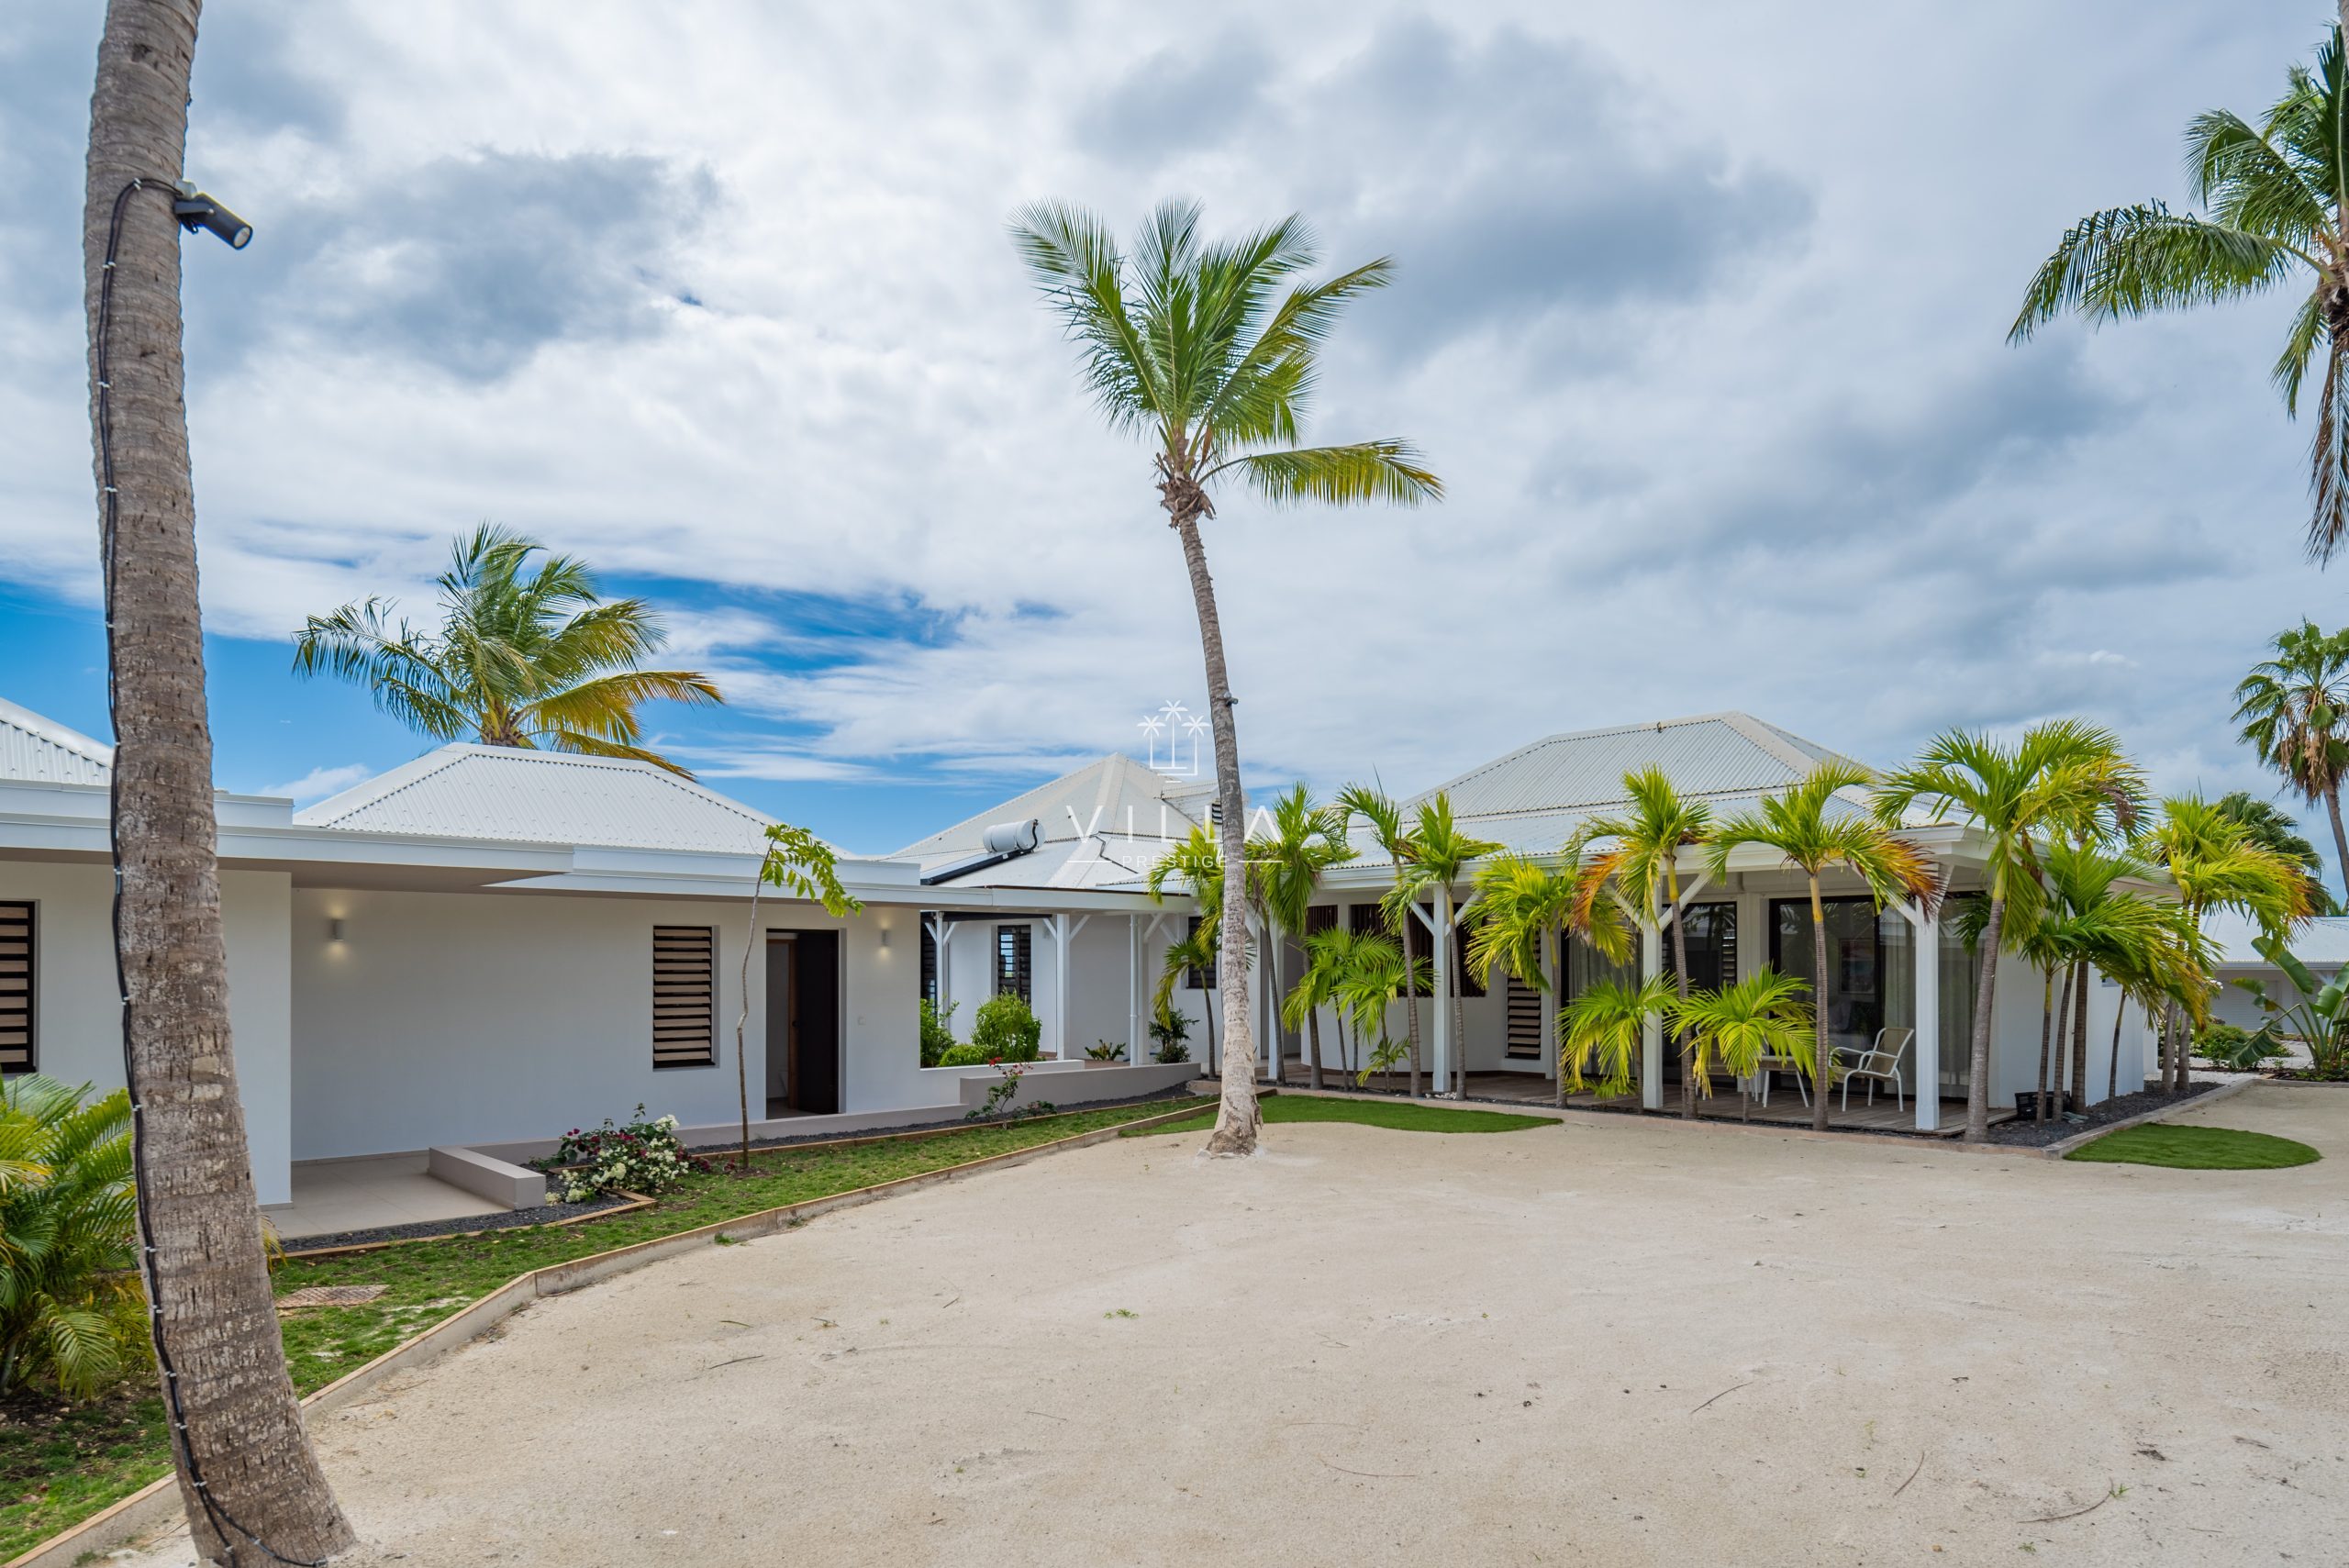 Villa Tikol Guadeloupe vacances prestige piscine vue mer